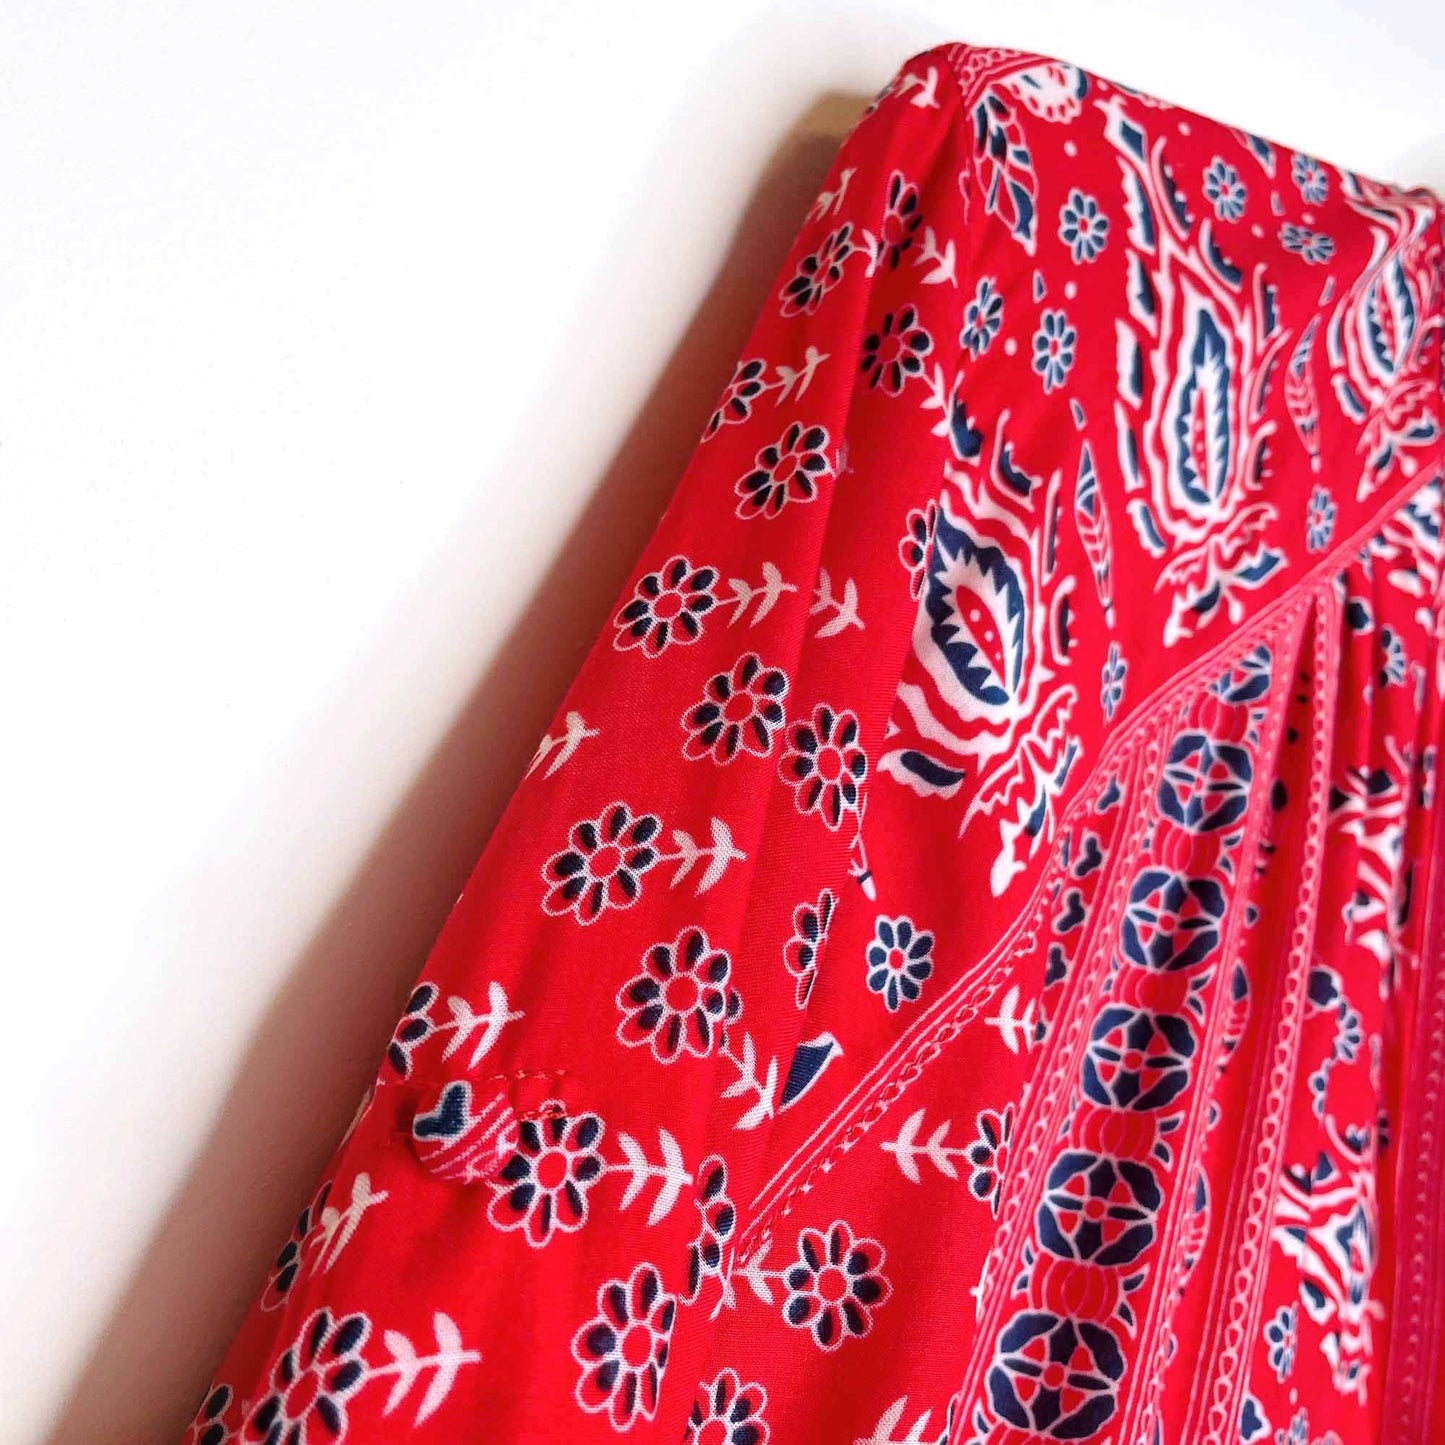 spell & the gypsy red bandana gypsiana shirt dress - size small